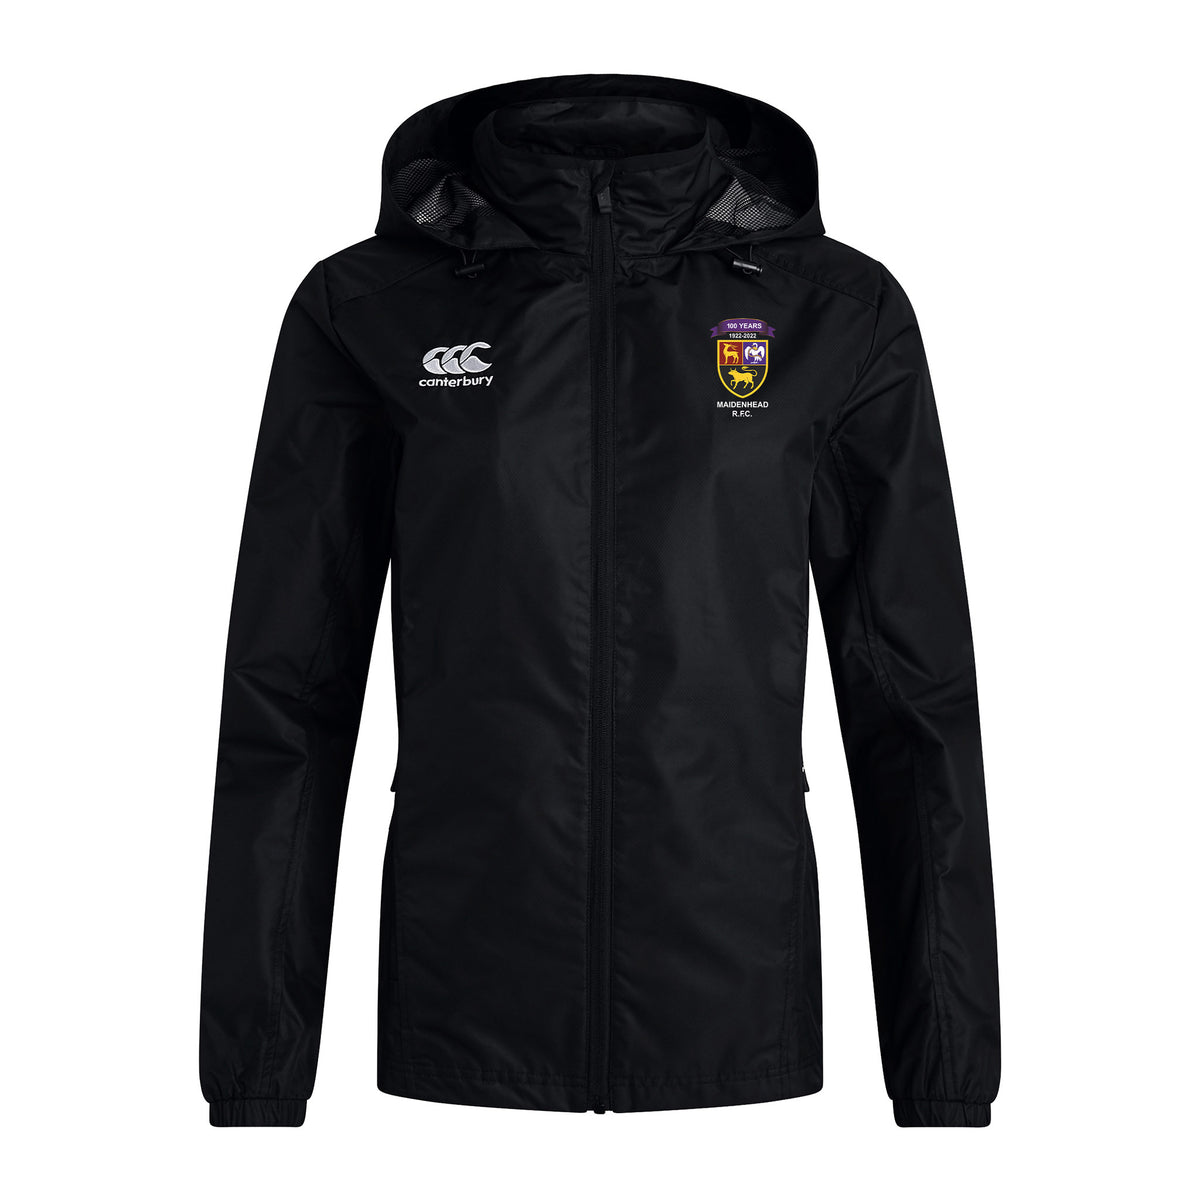 Maidenhead RFC Canterbury Women's Club Vaposhield Full Zip Jacket